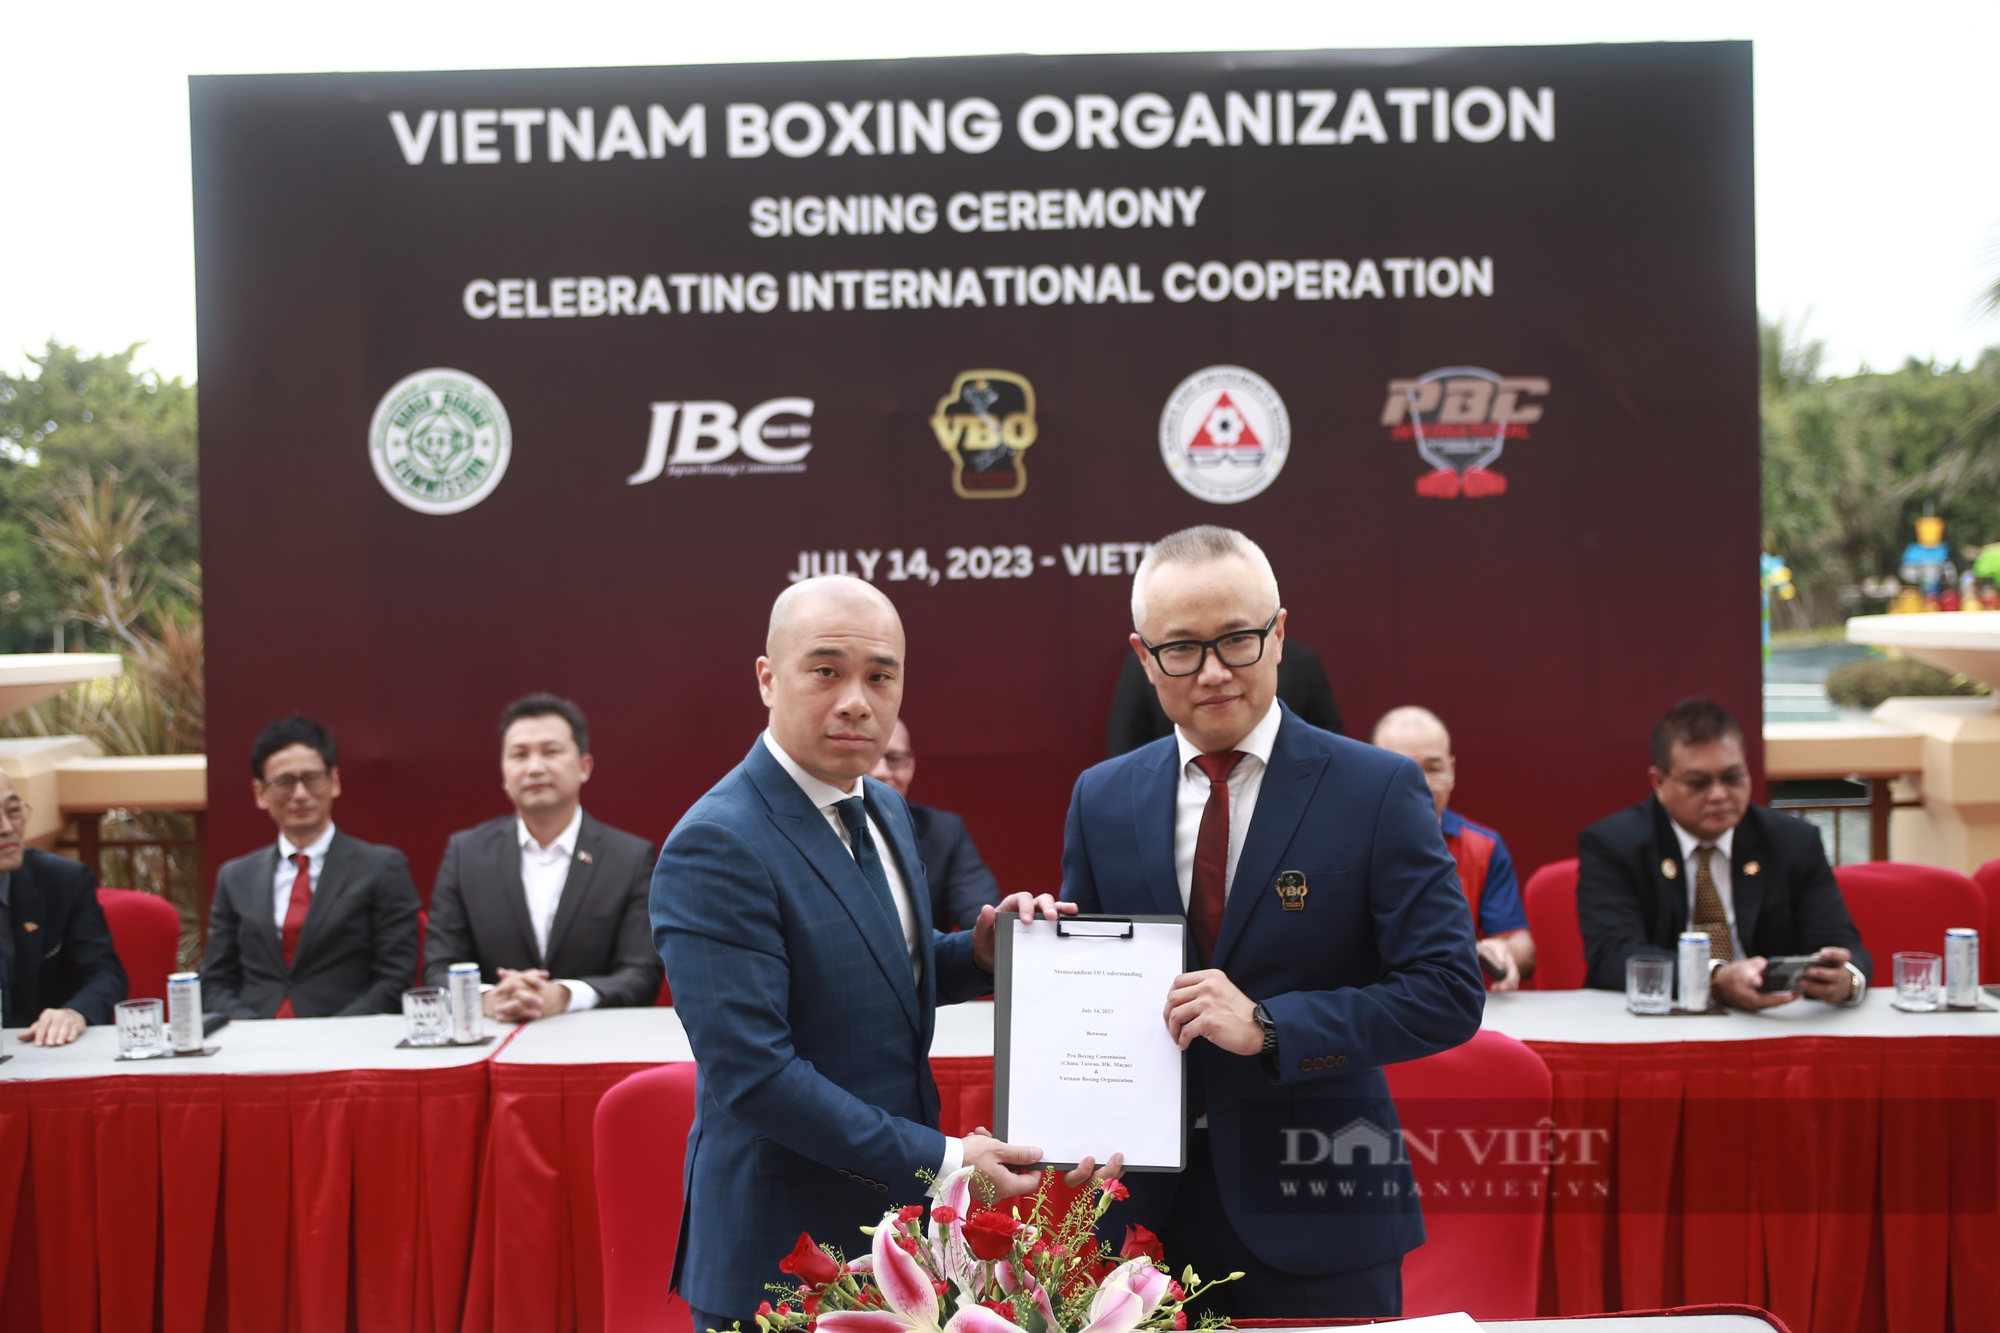 Chính thức thành lập Tổ chức Quyền Anh Việt Nam: Cơ hội của các võ sĩ chuyên nghiệp - Ảnh 2.